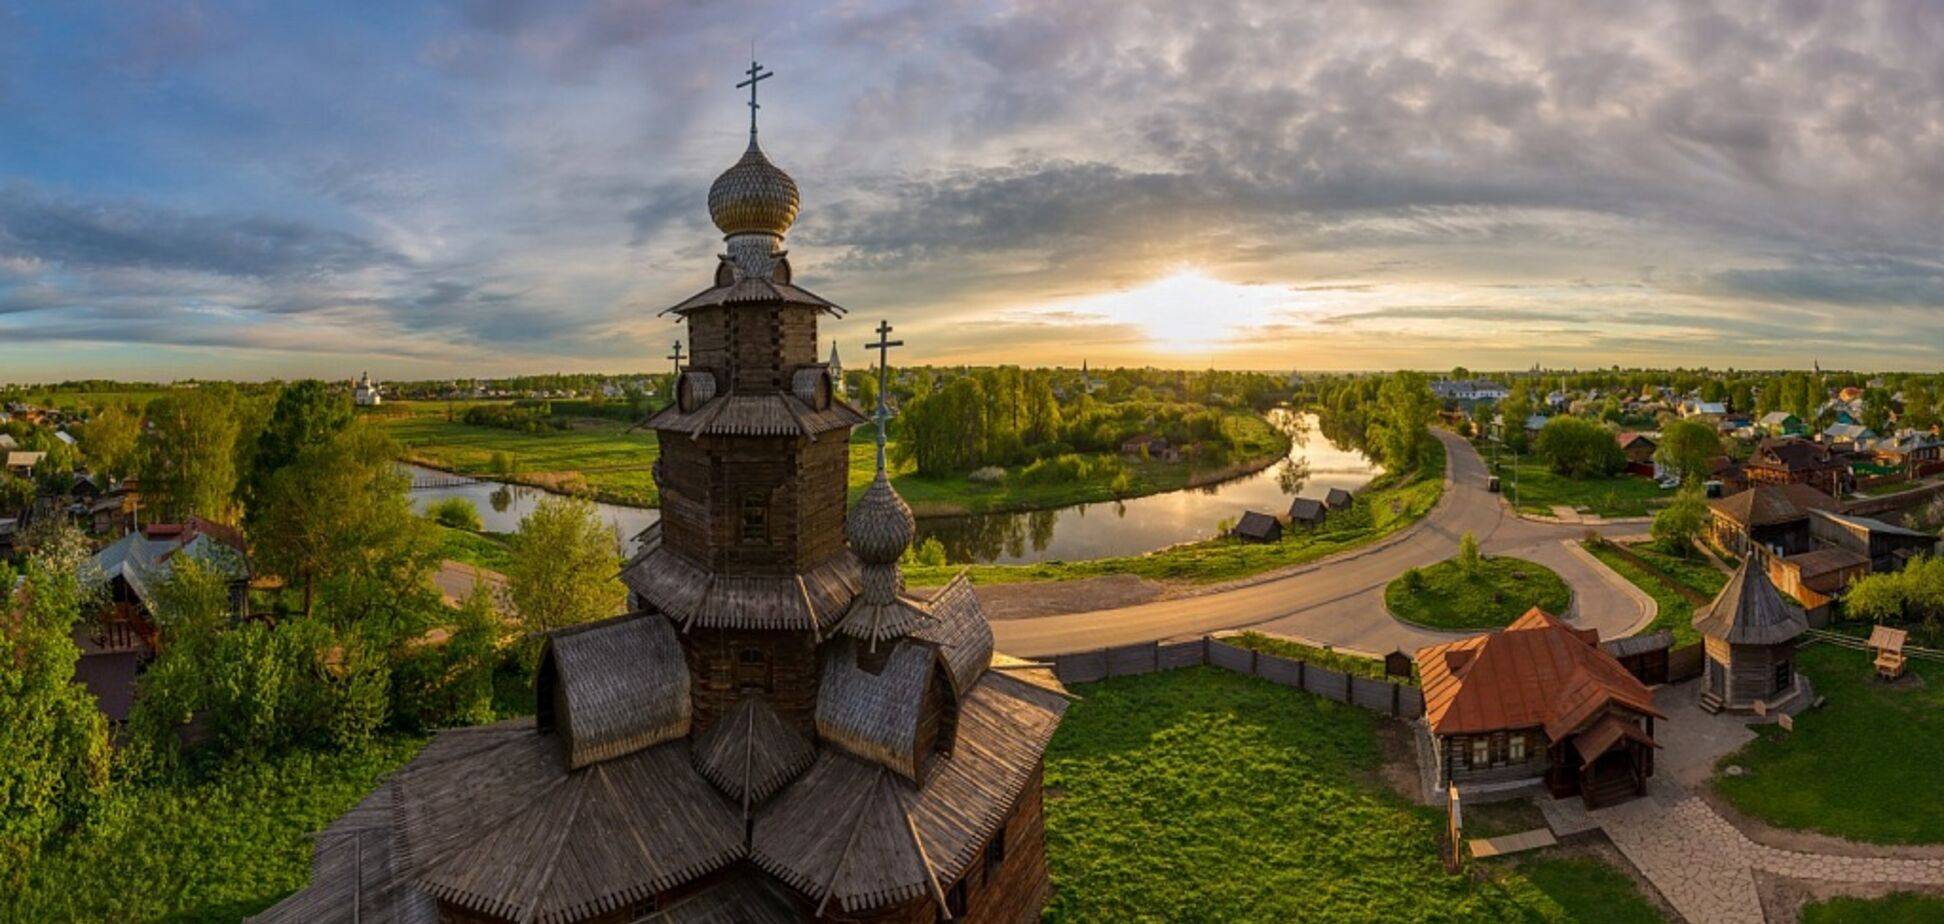 10 достопримечательностей в россии, которые нужно посетить